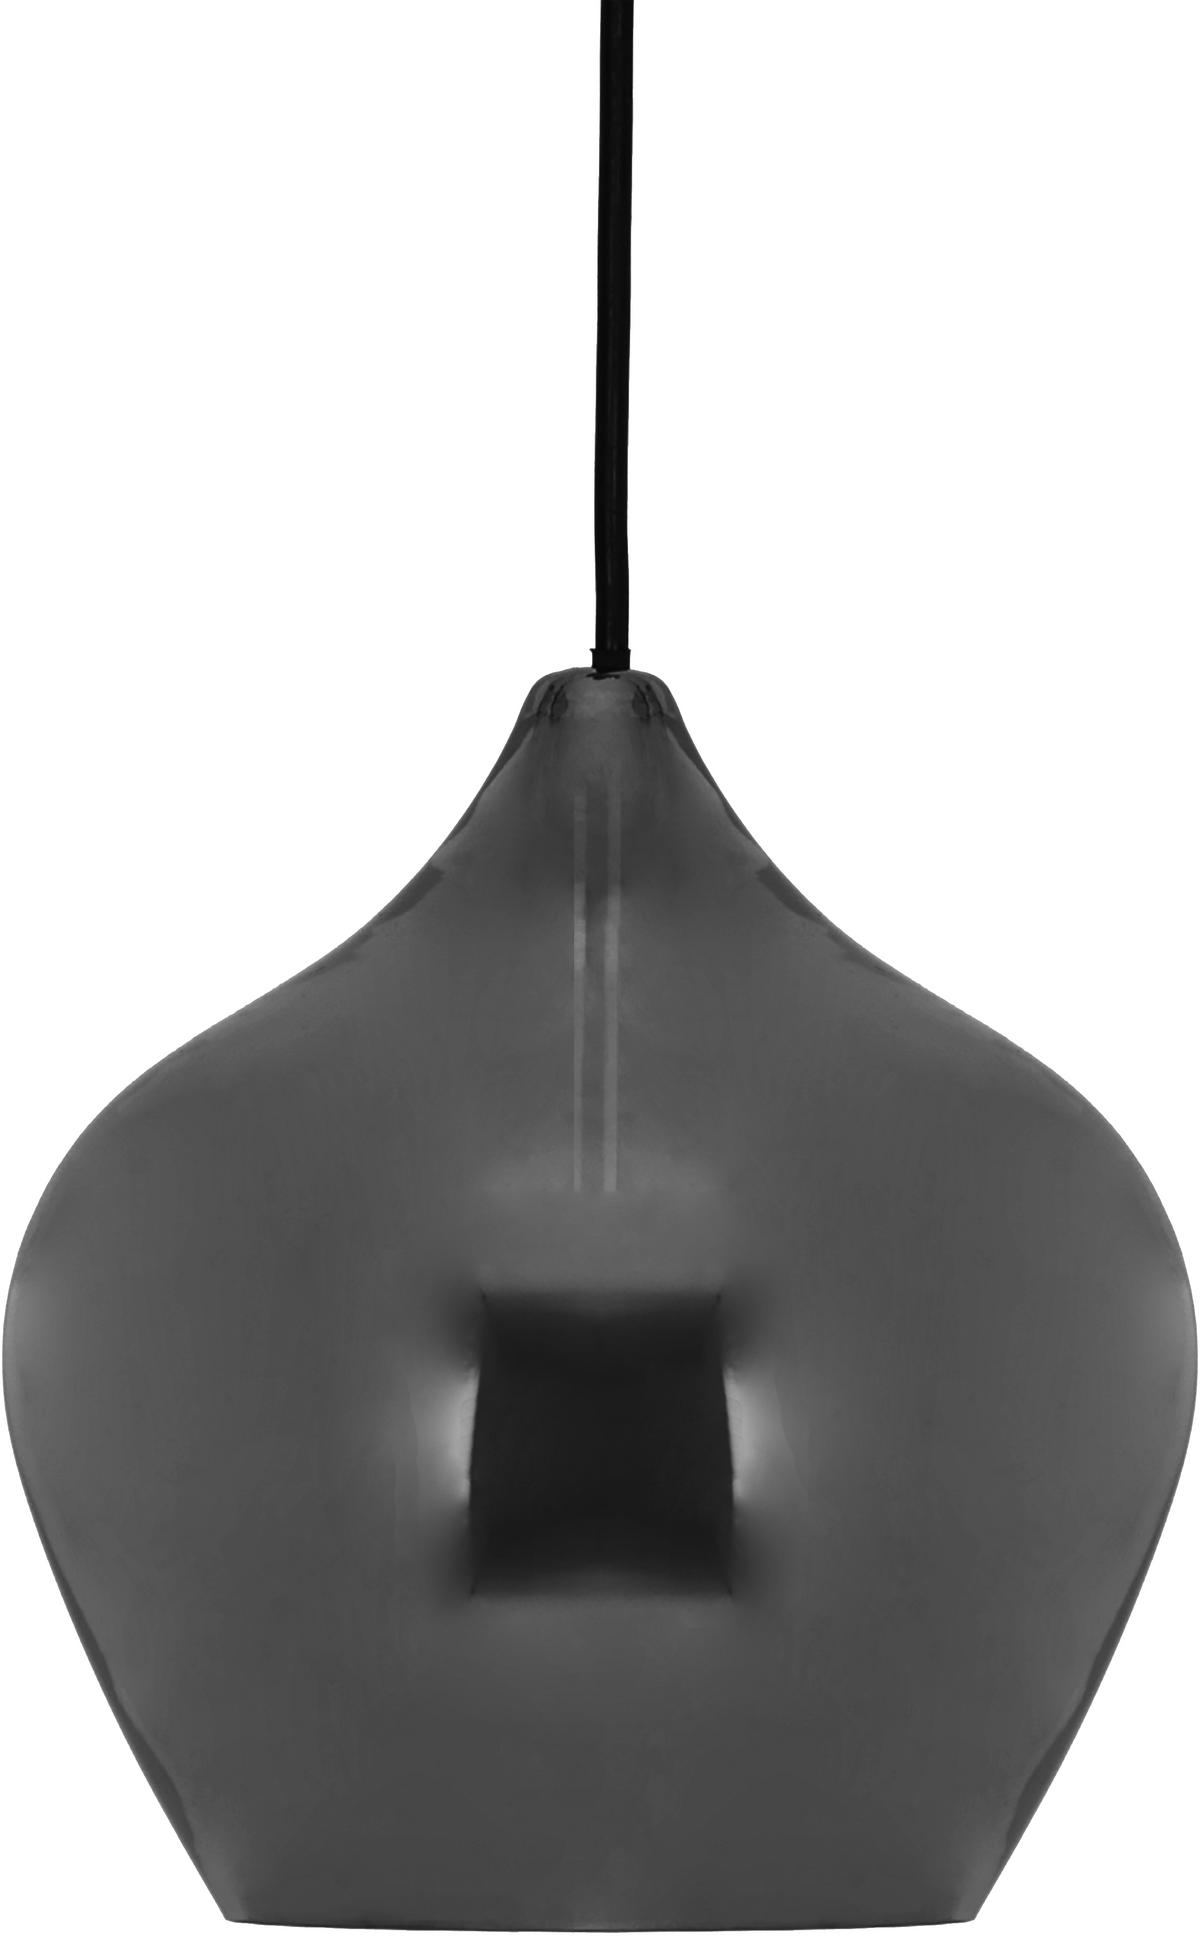 HÄNGELEUCHTE 29/130 cm   - Grau, Design, Glas/Metall (29/130cm) - Marama